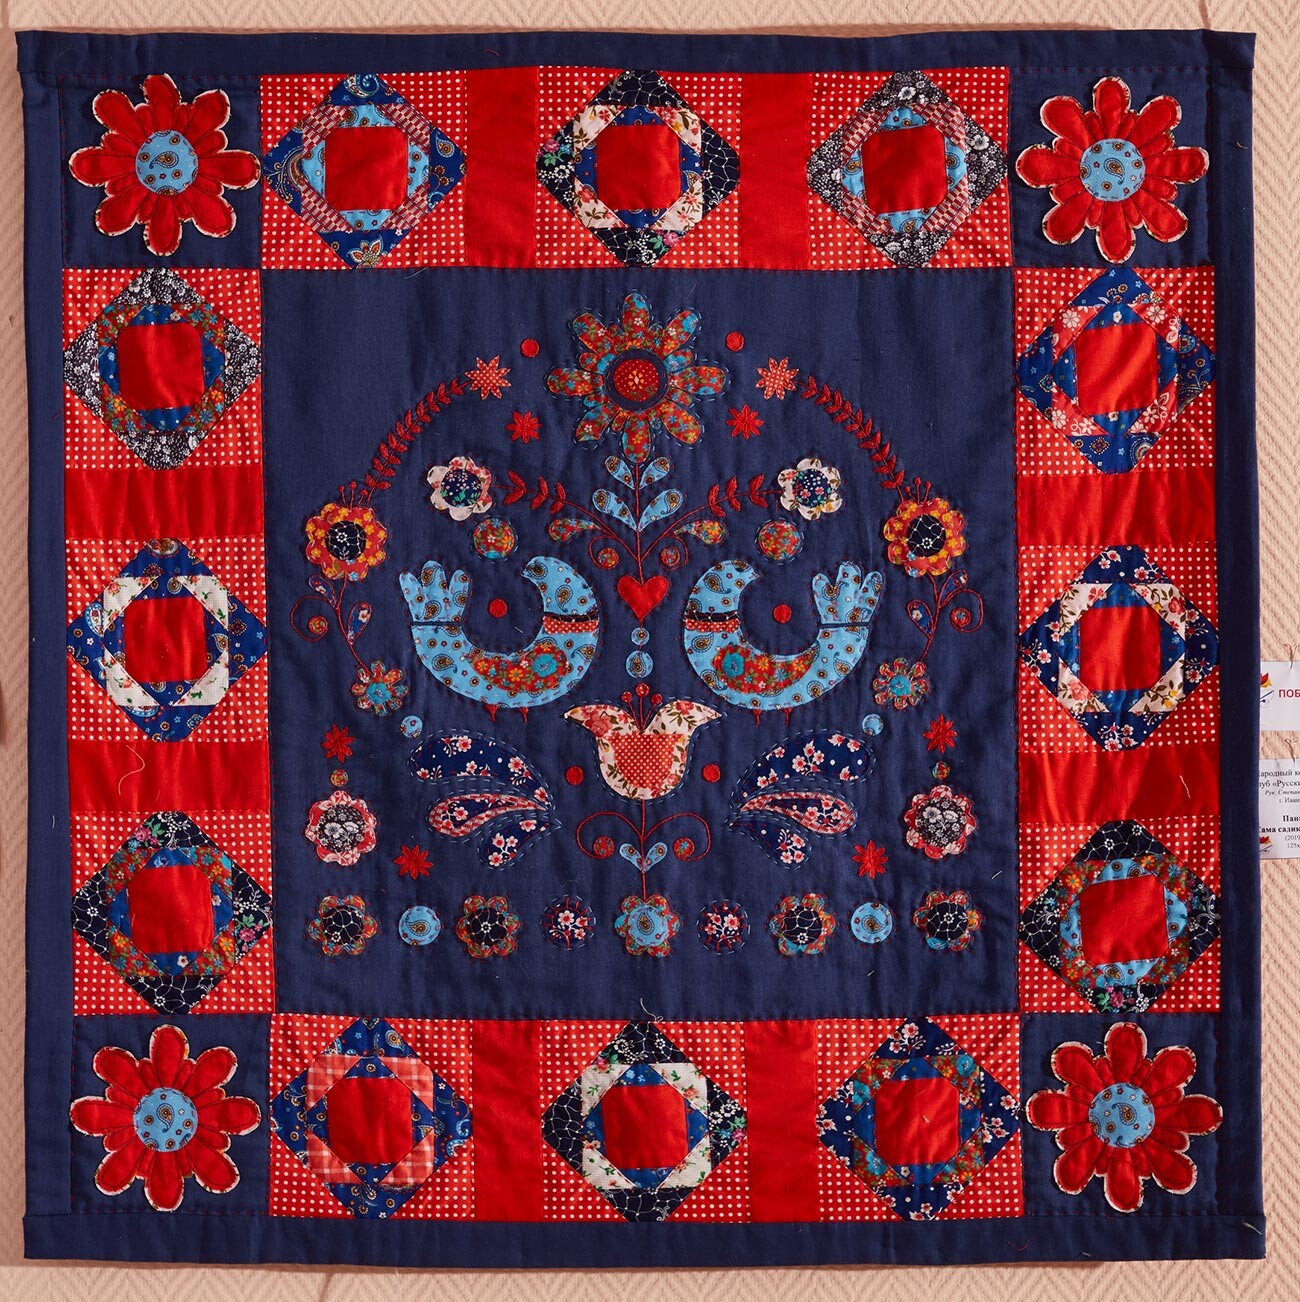 Lauréate du concours « Mosaïque patchwork de Russie » : Svetlana Zolotareva. Panneau « L'Arbre de vie », 2020, région de Perm

